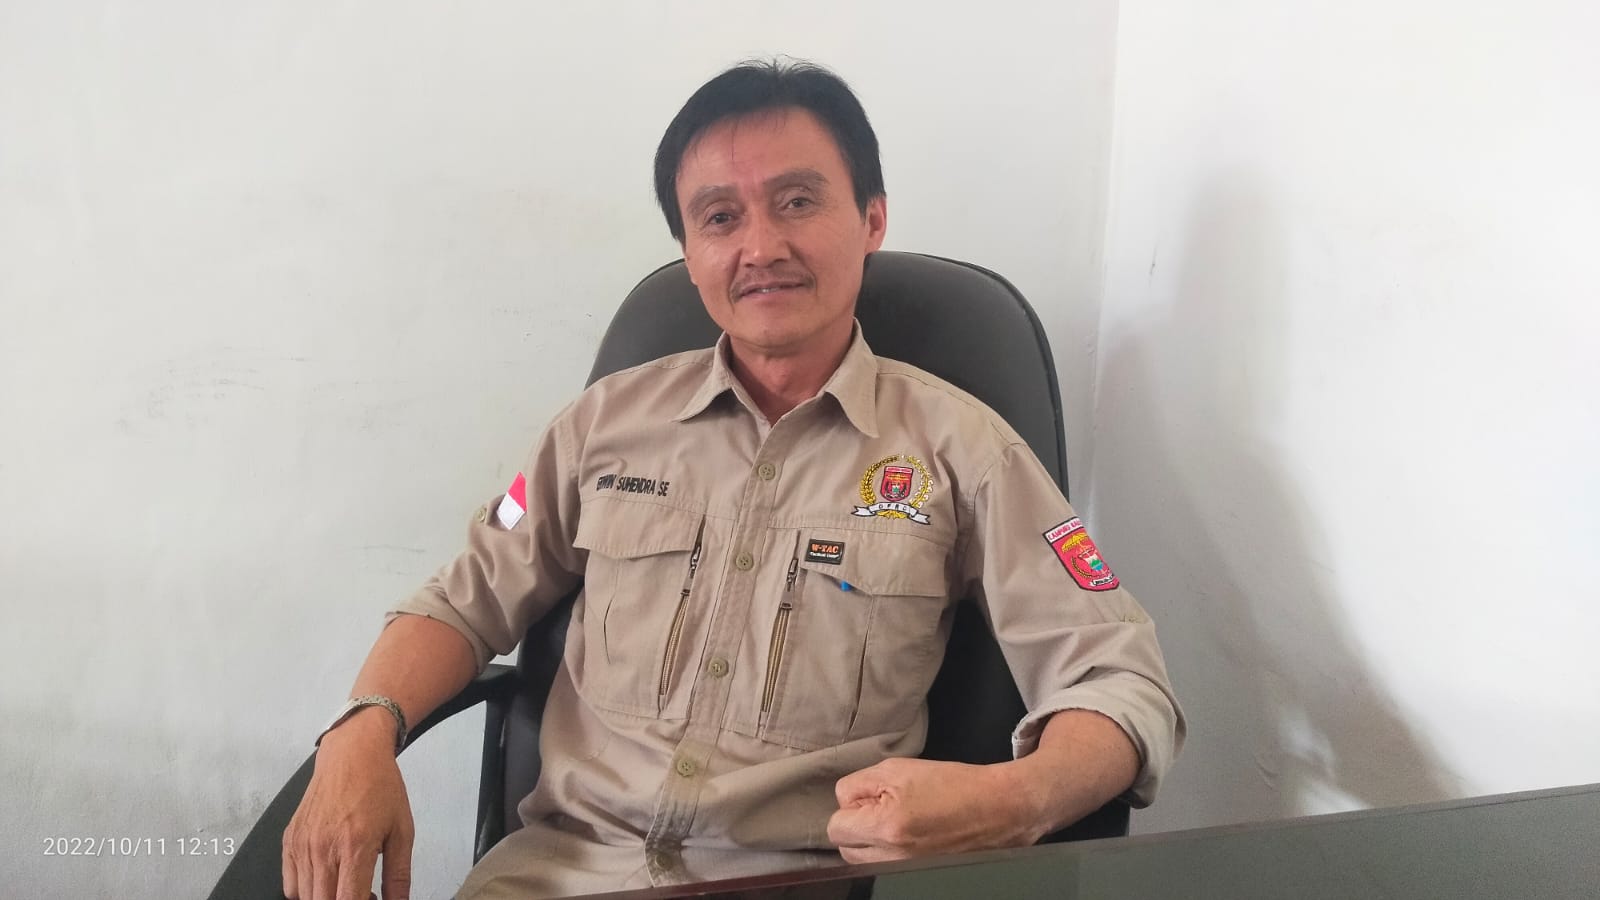 Bagian Umum Setkab Lambar Kangkangi Perbup, Anggota DPRD Erwin Suhendra: Tidak Ada Toleransi, Itu Pelanggaran